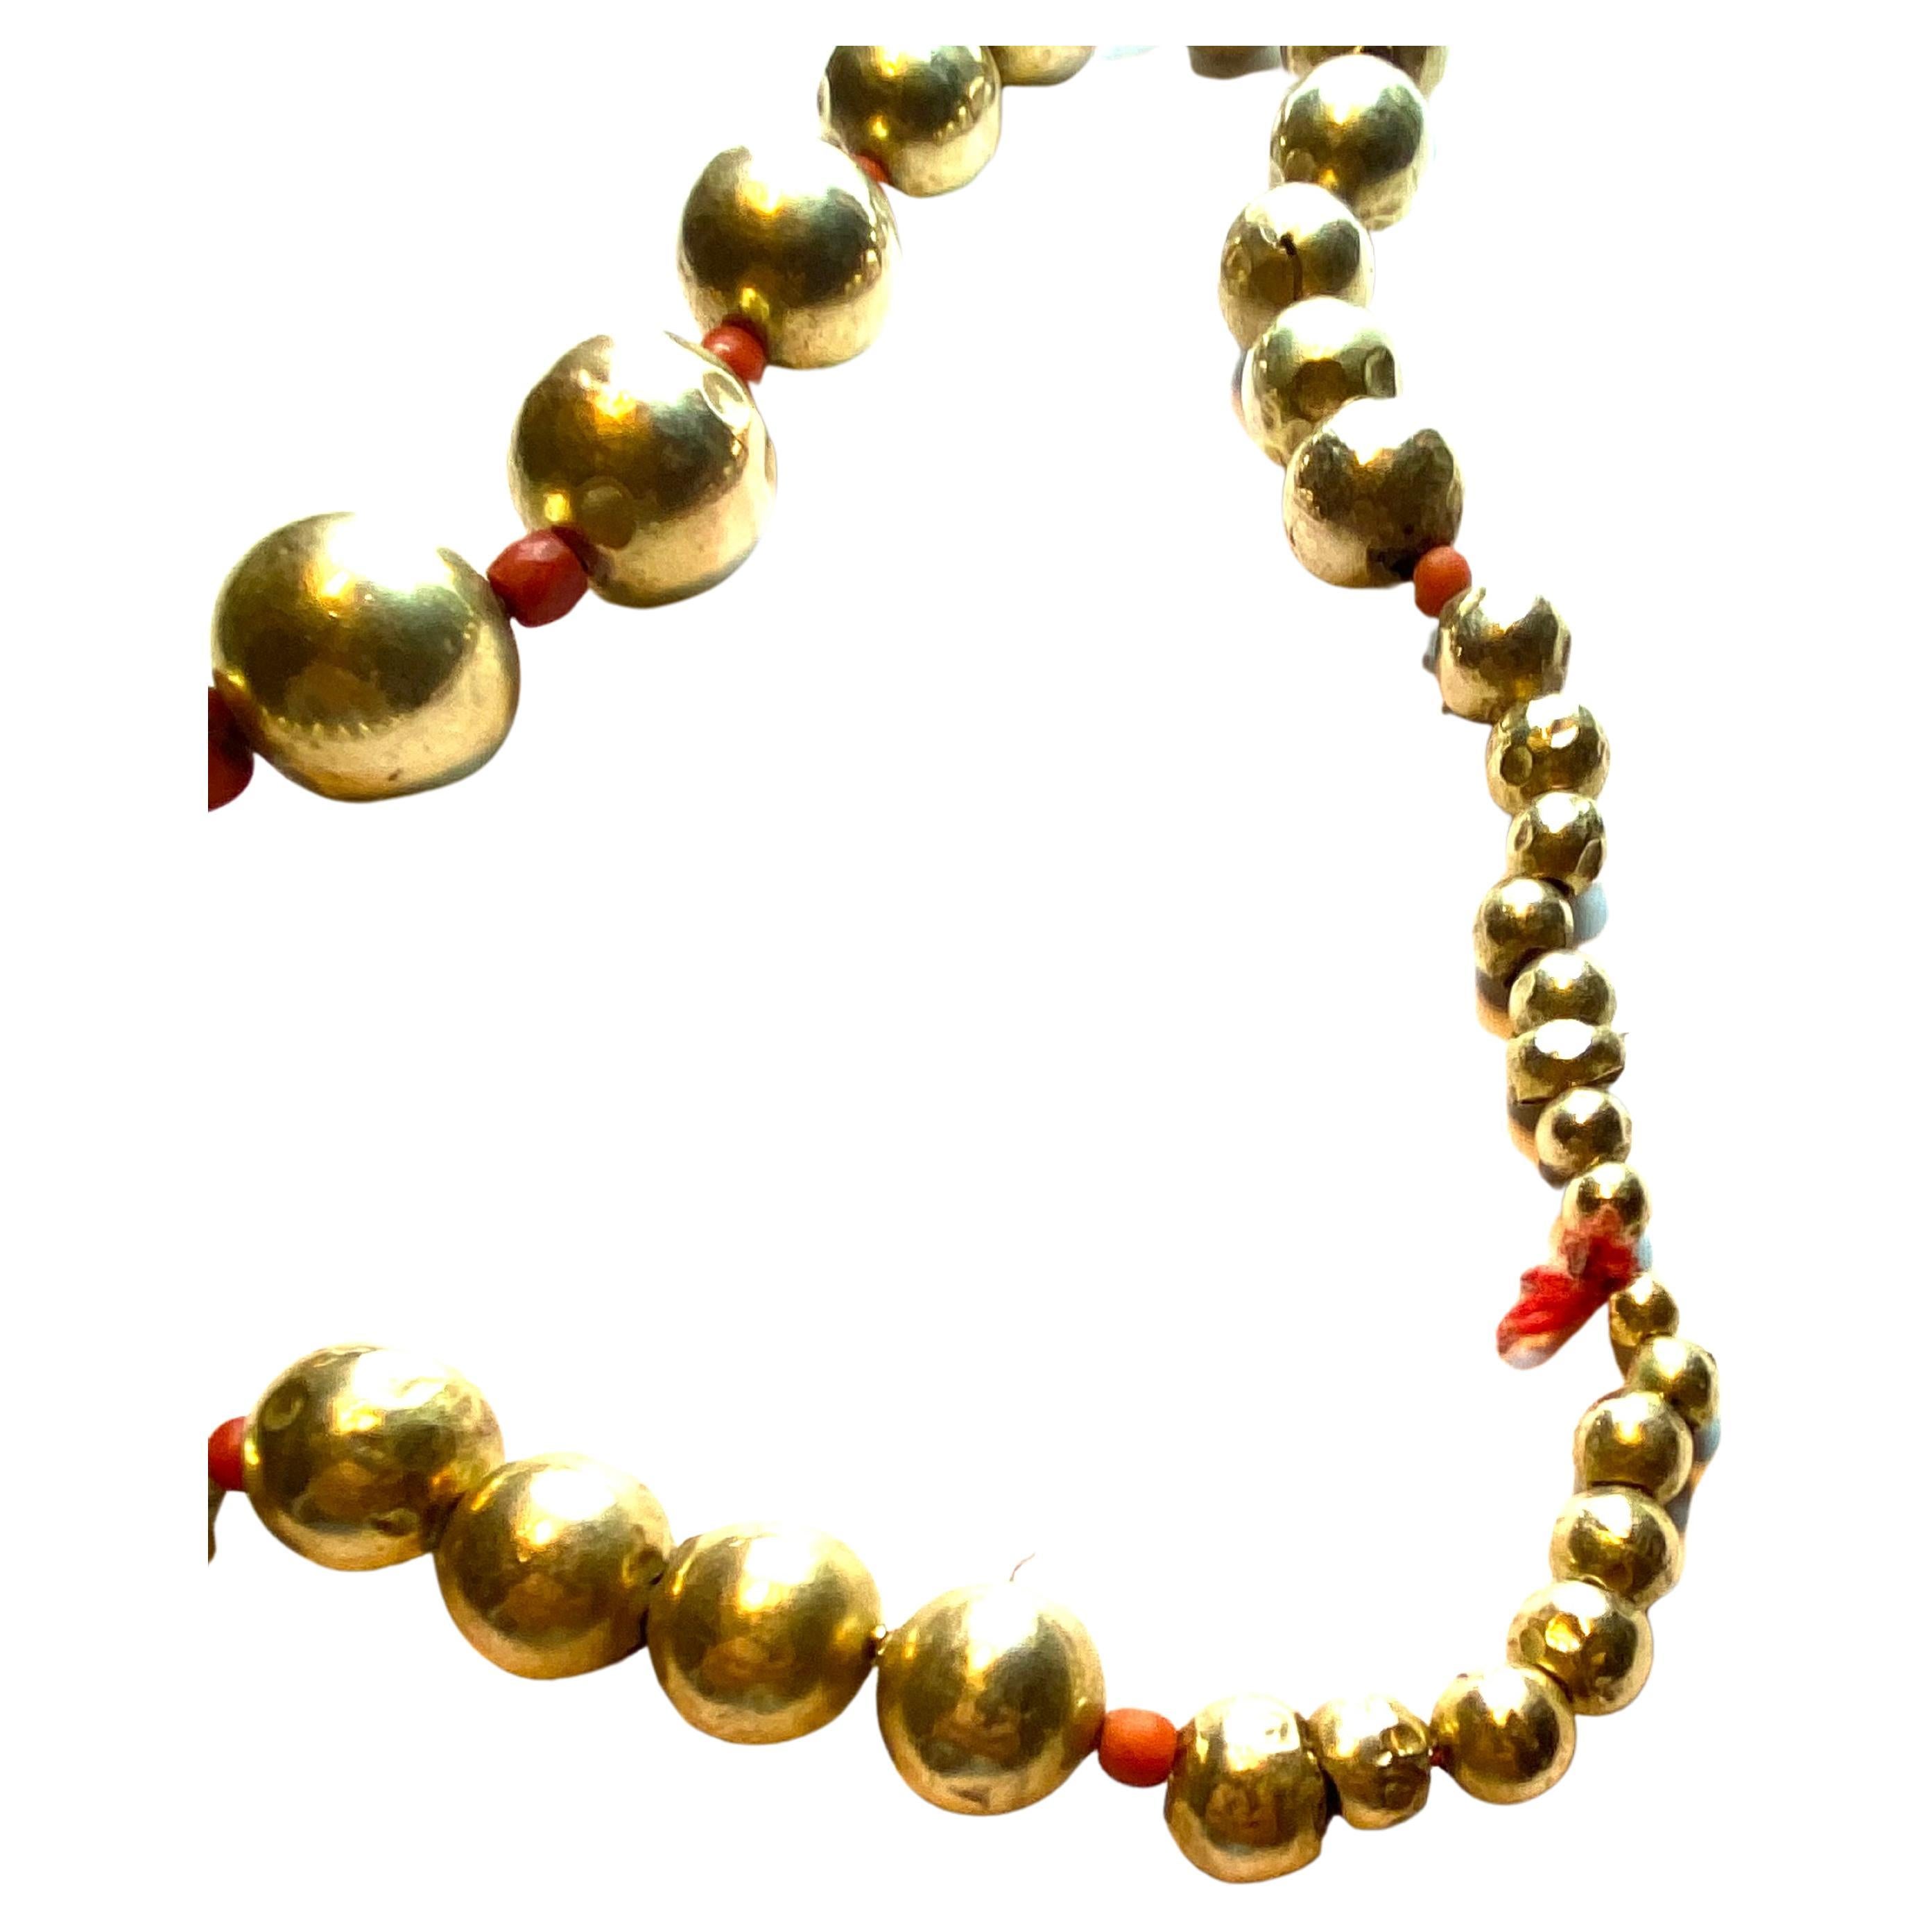 Très rare collier avec des sphères en or, appelées 